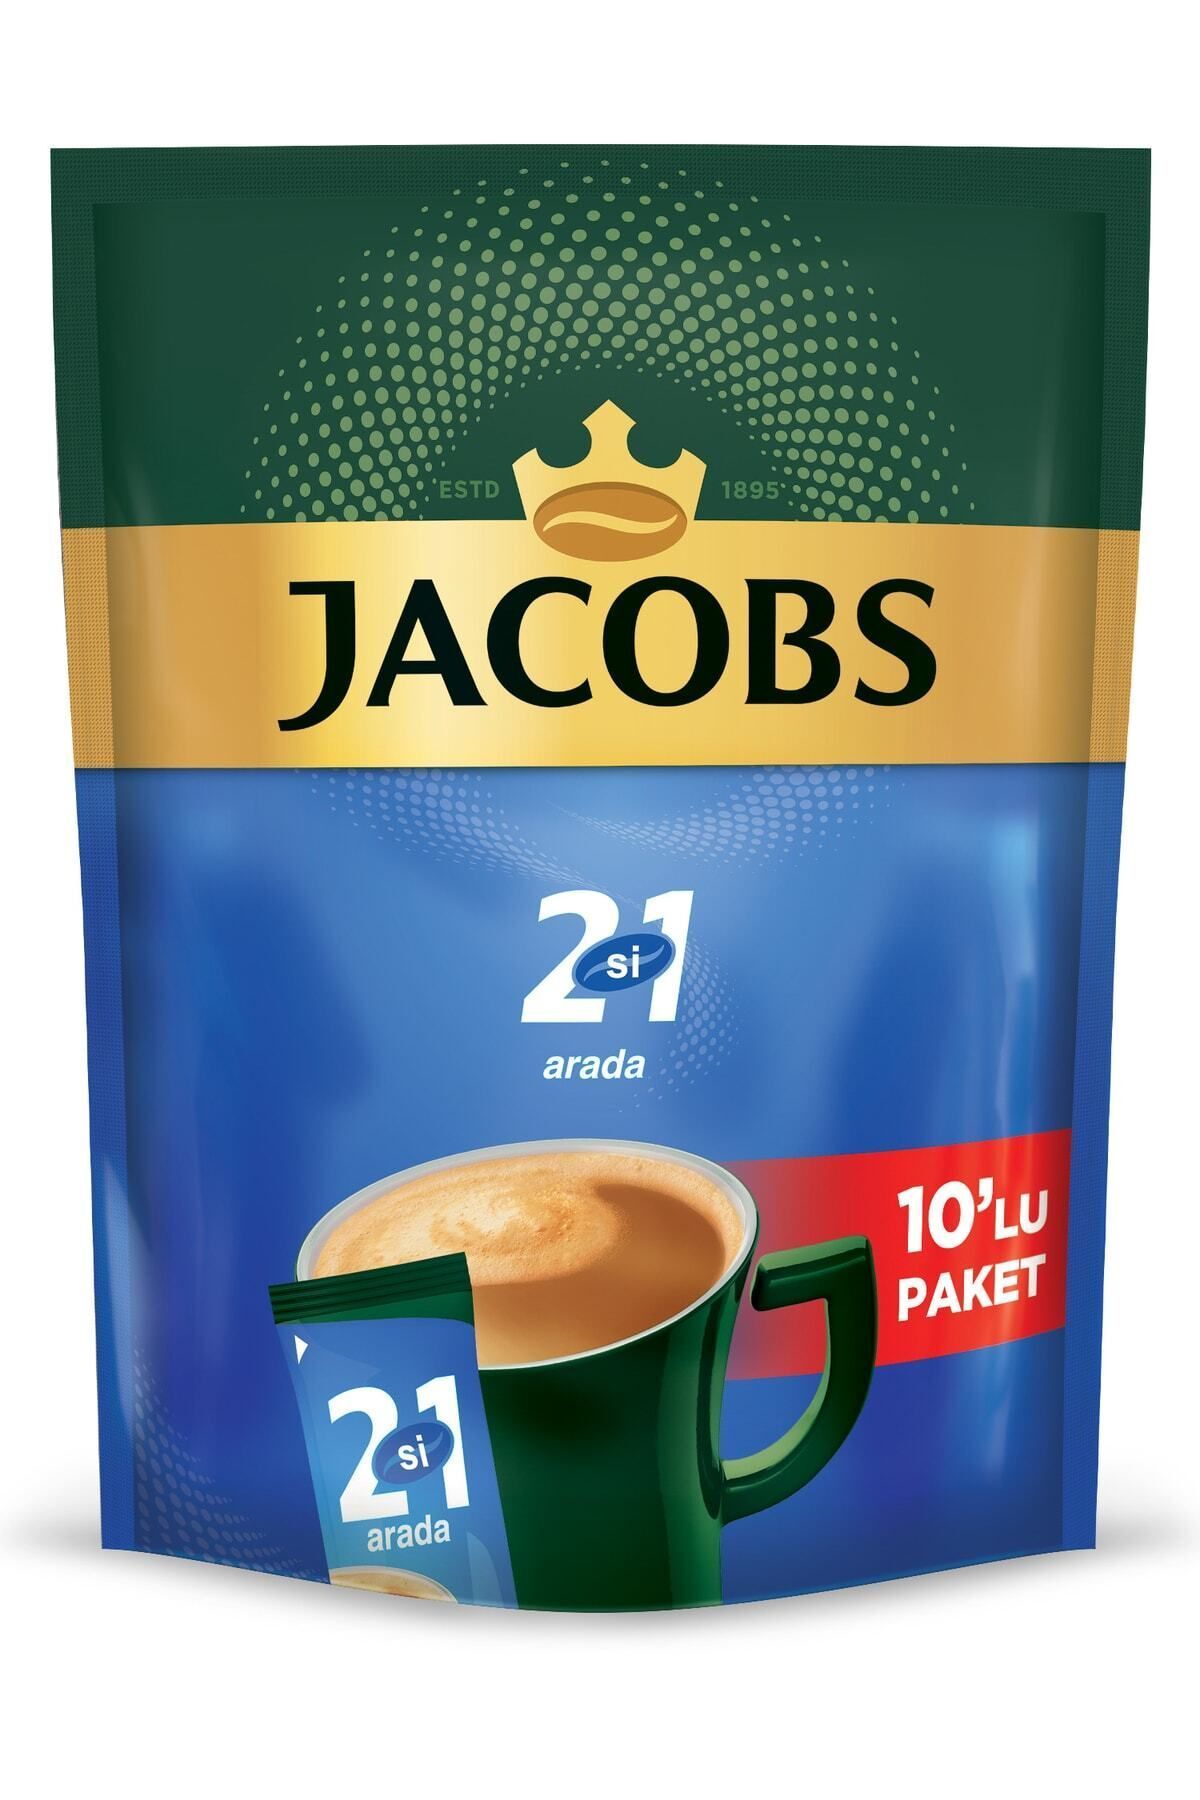 Jacobs 2si1 Arada 10'lu